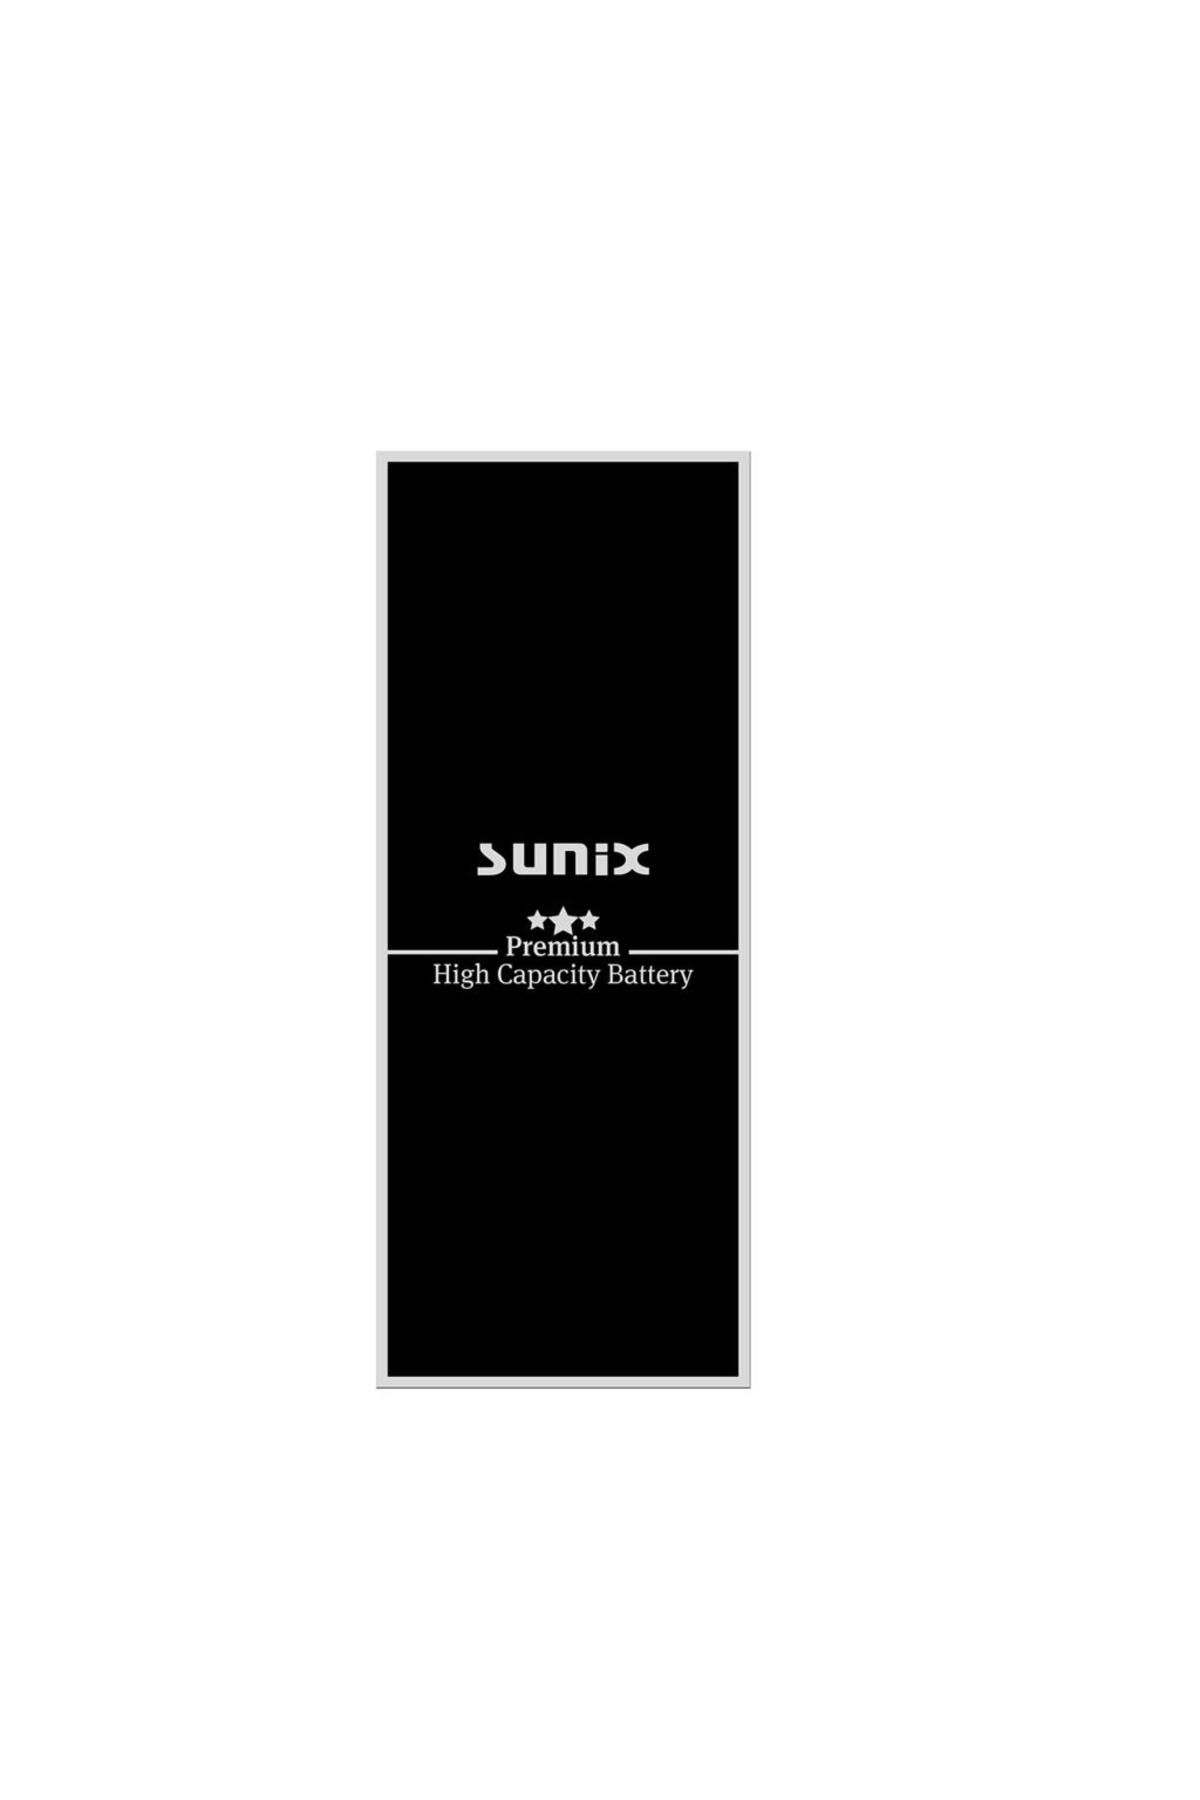 Sunix İphone Xs Ile Uyumlu Premium Güçlendirilmiş Yüksek Kapasiteli Batarya